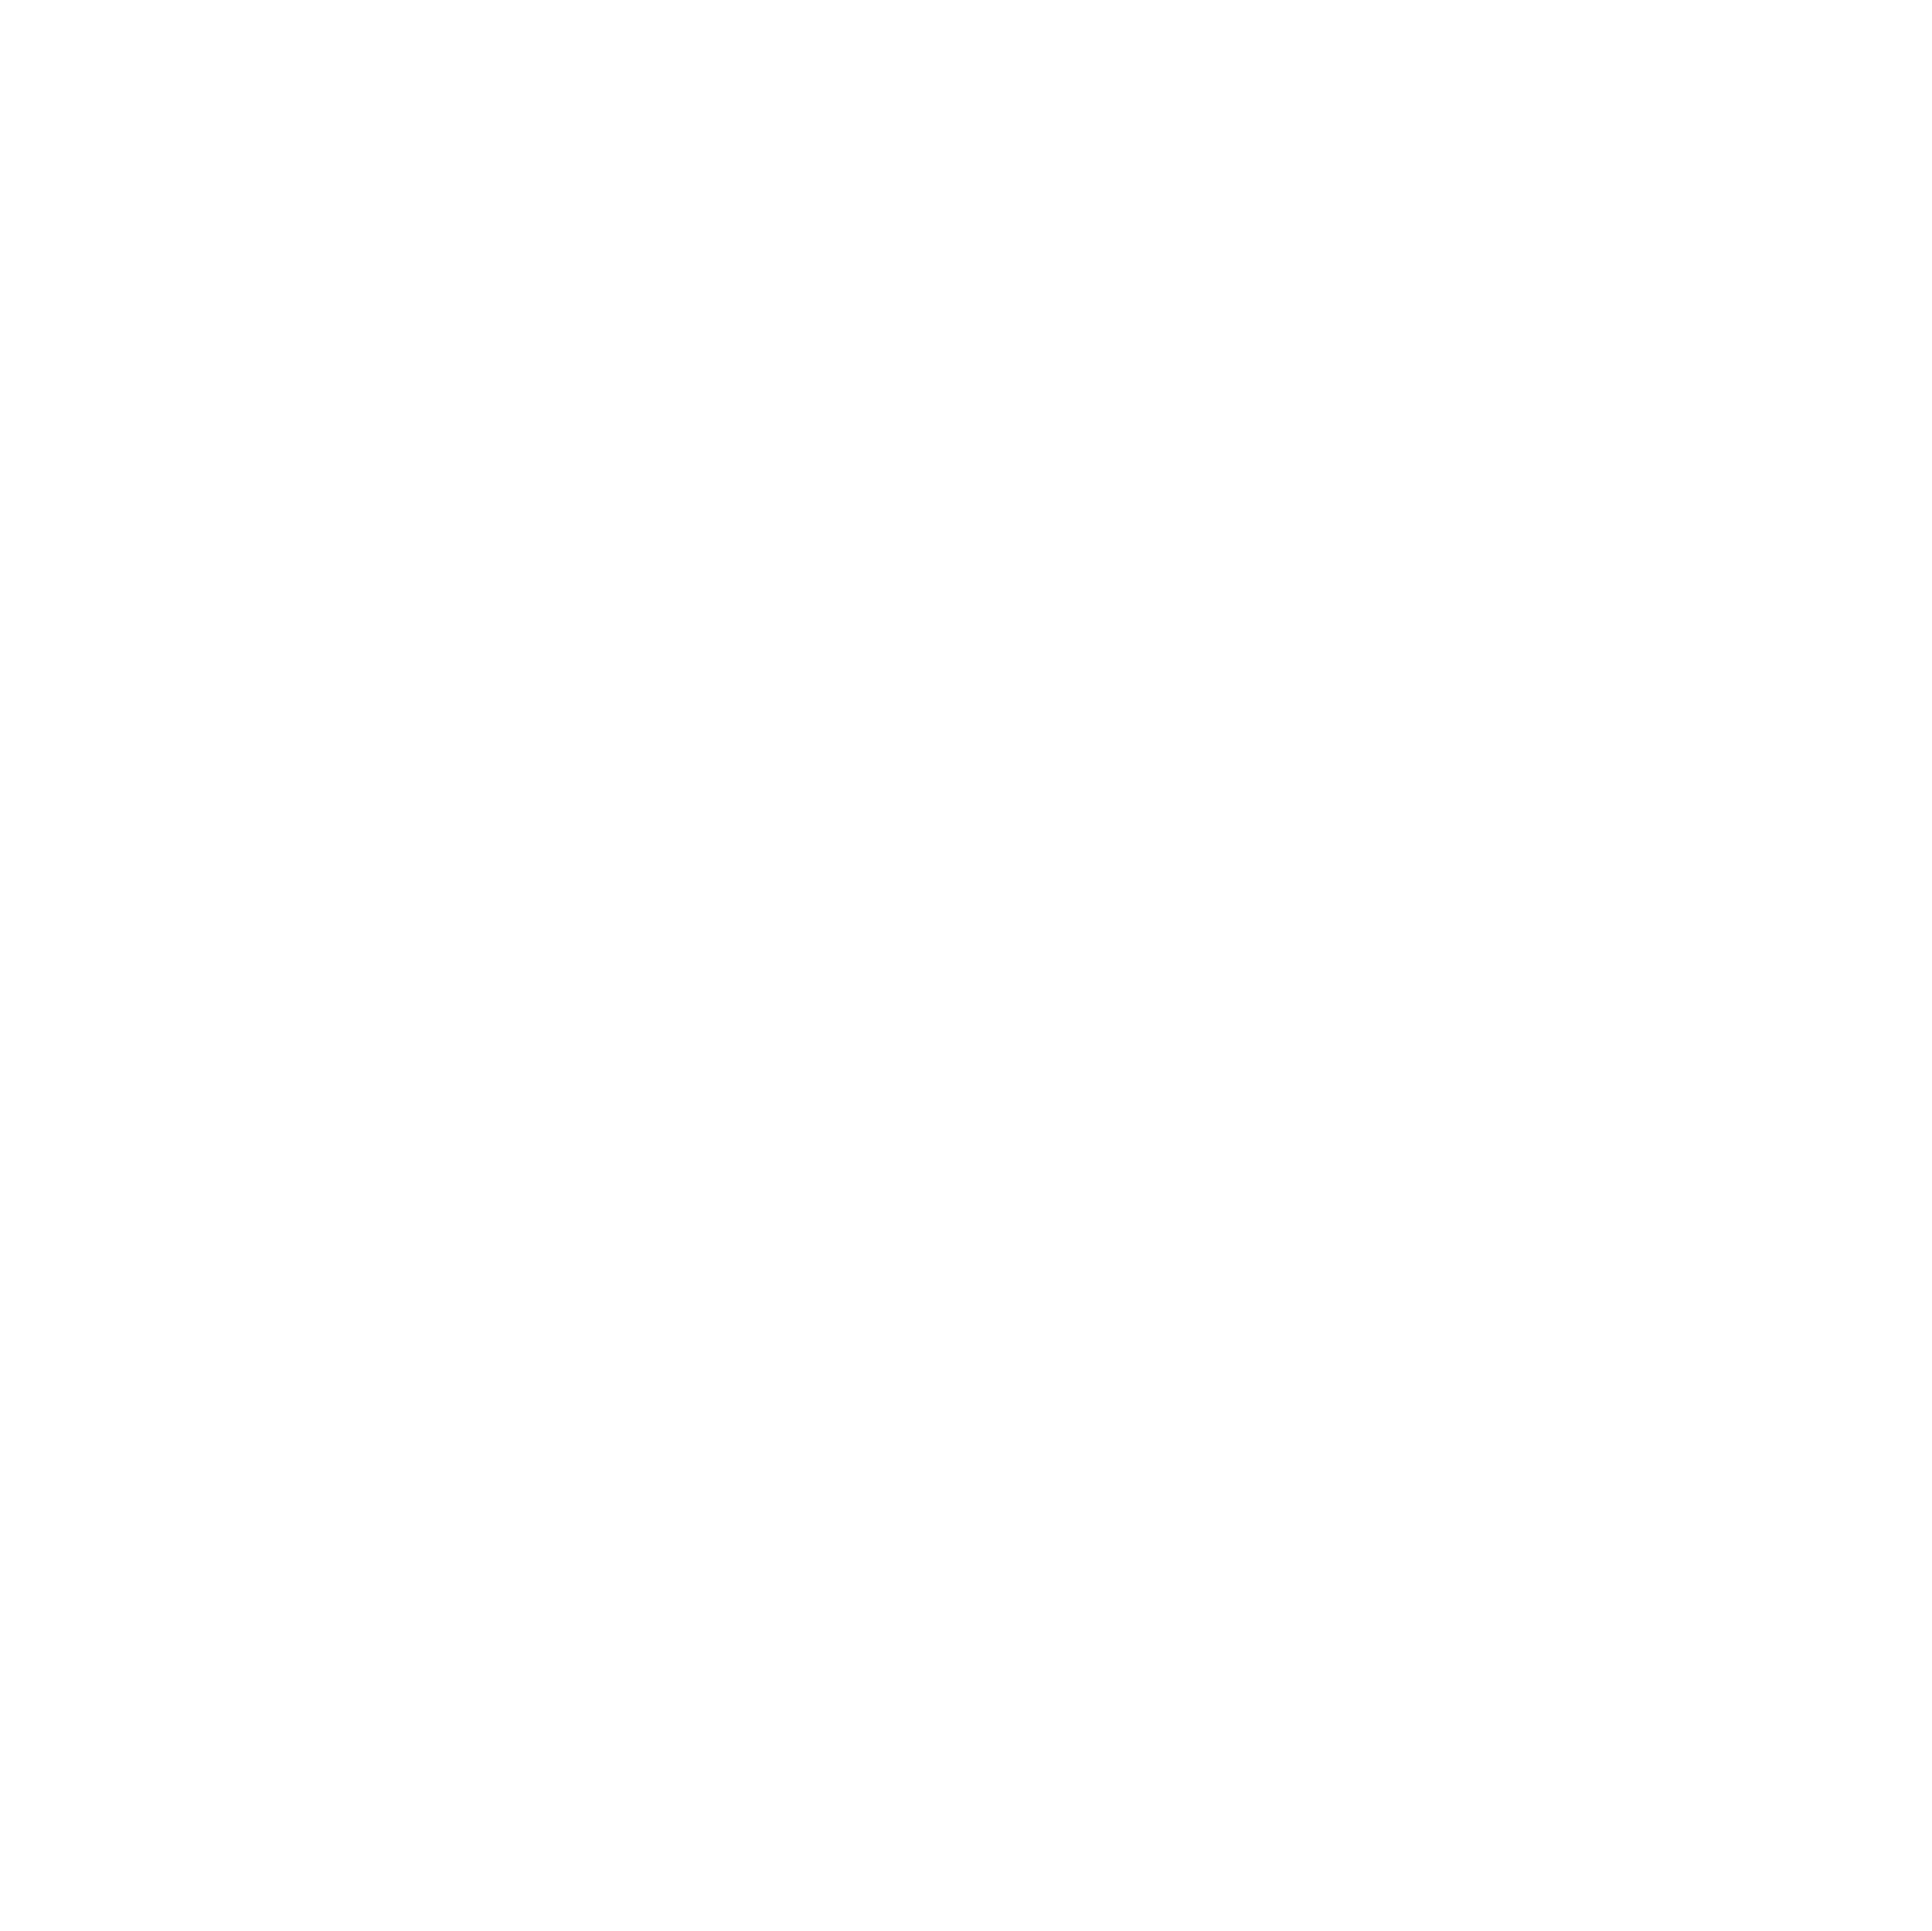 Reality Labs at Meta